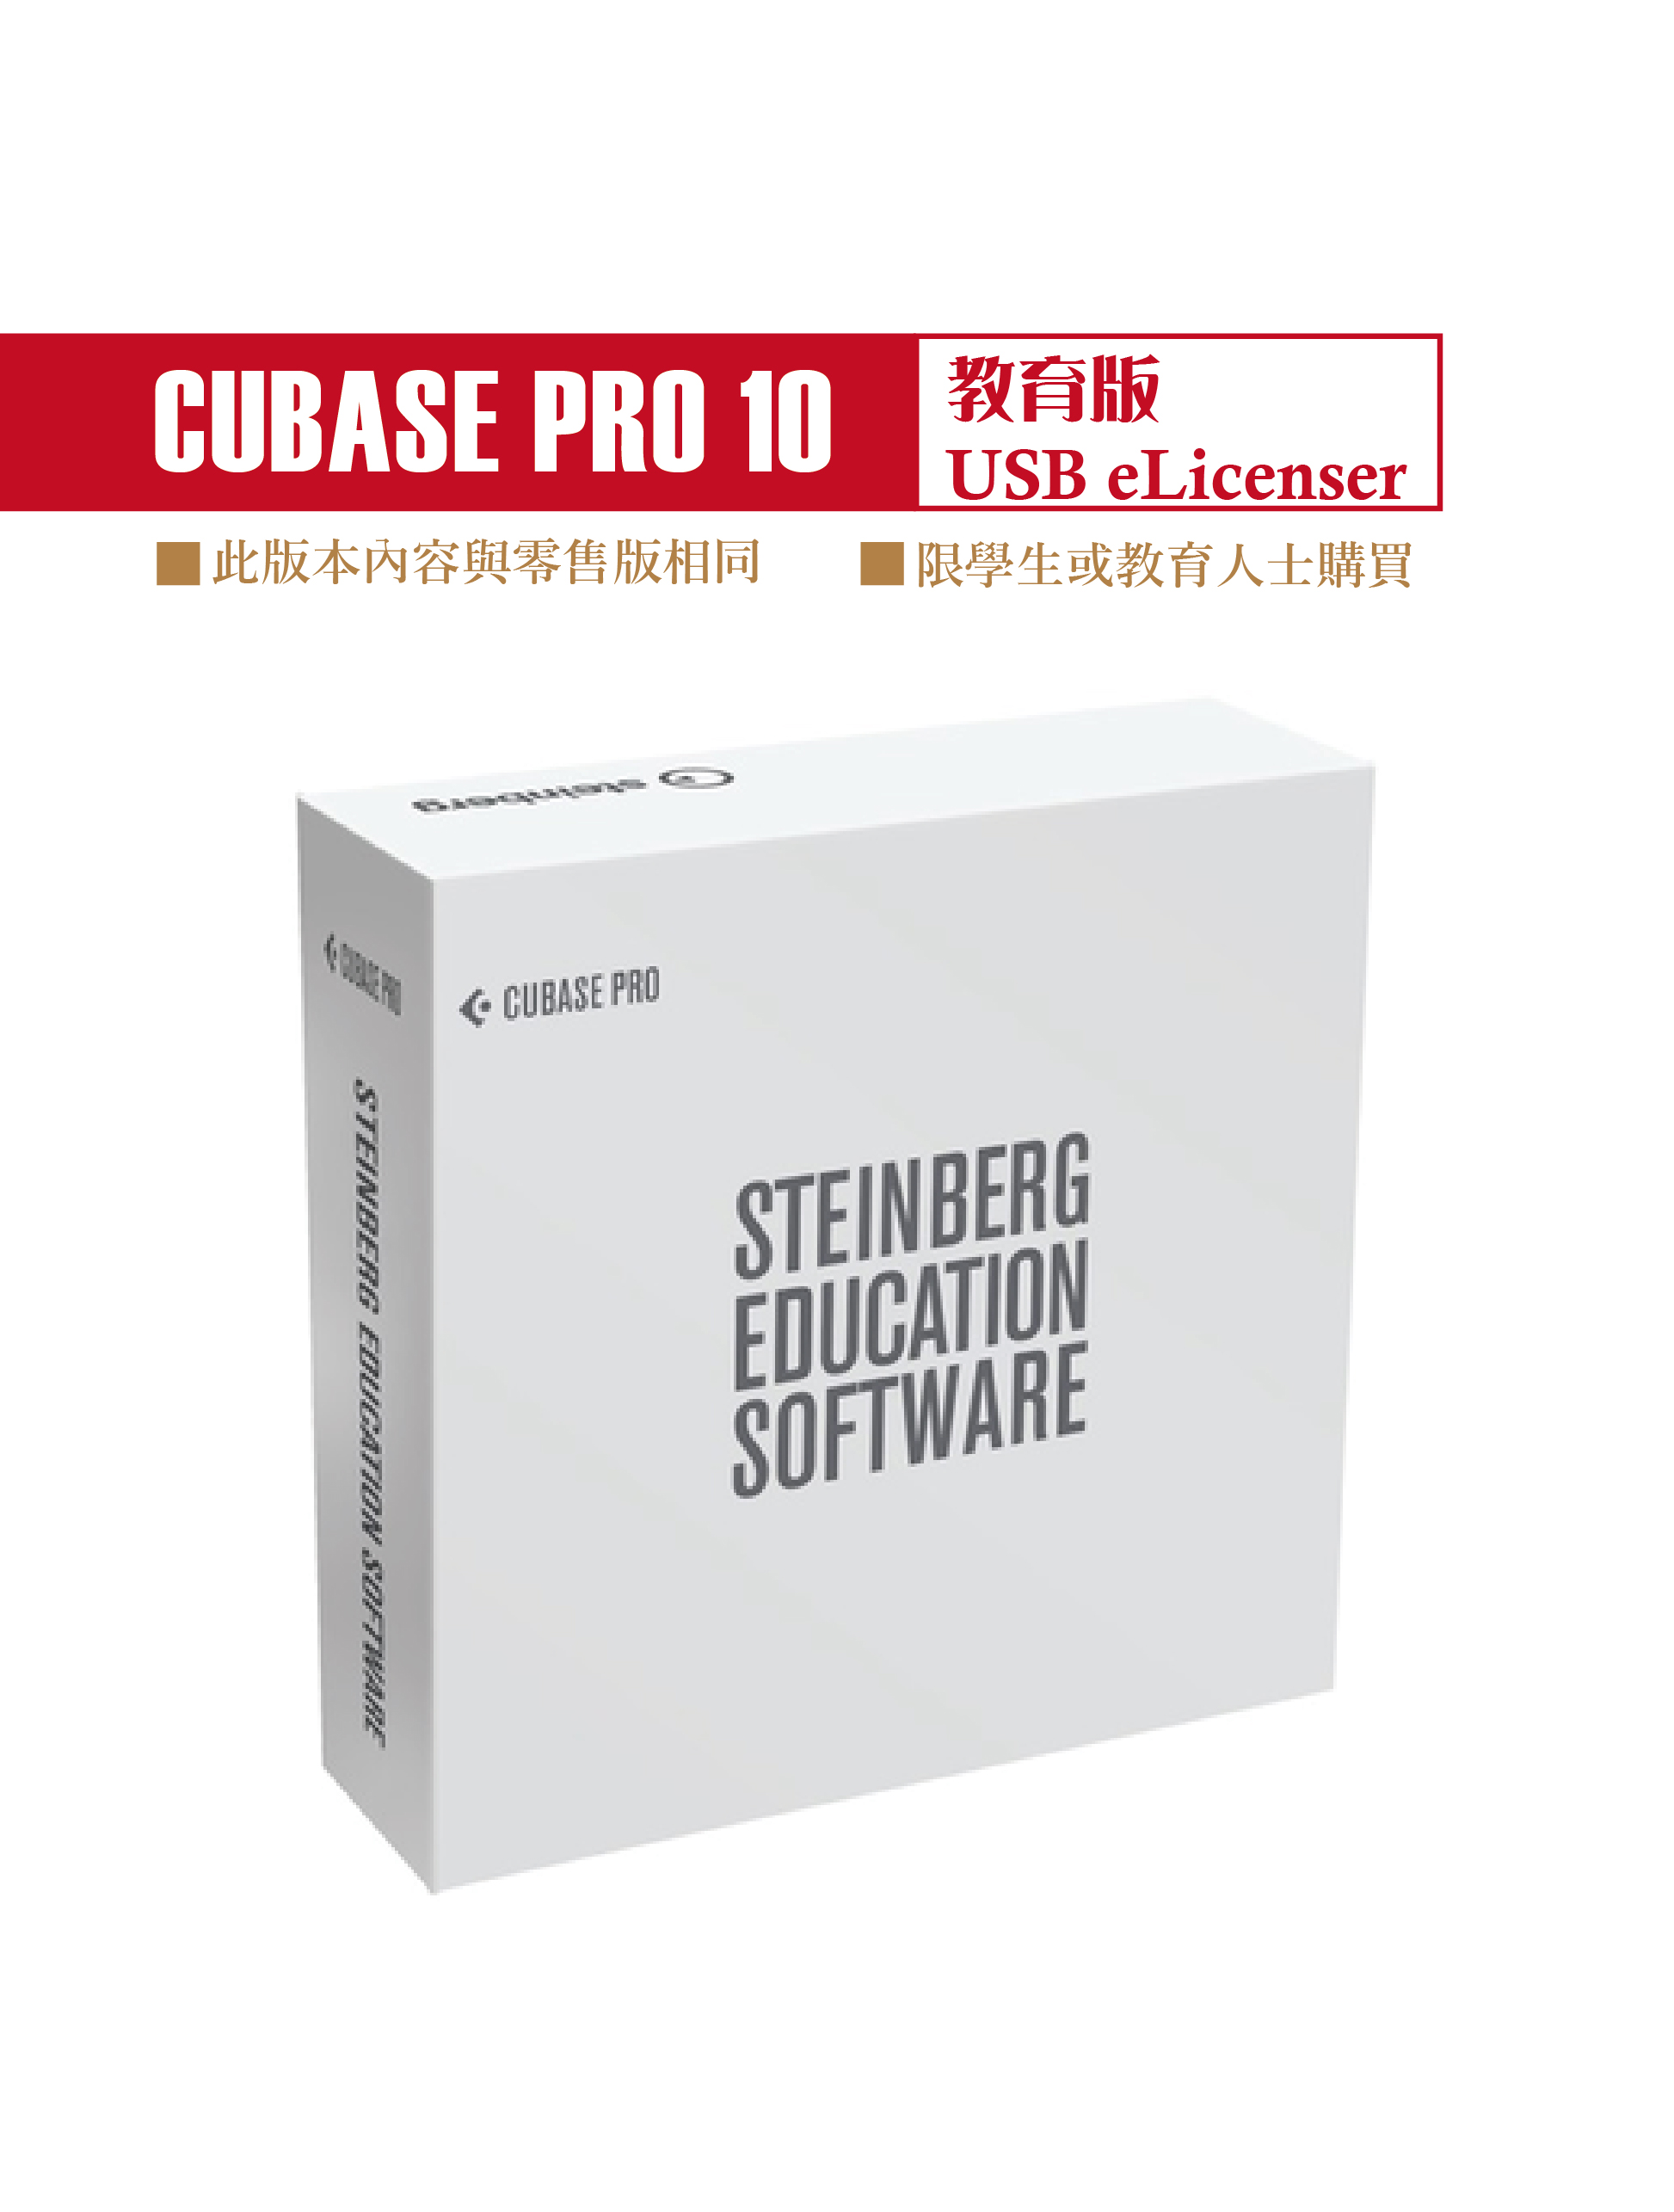 Cubase Pro 10.5 教育版(USB eLicenser)